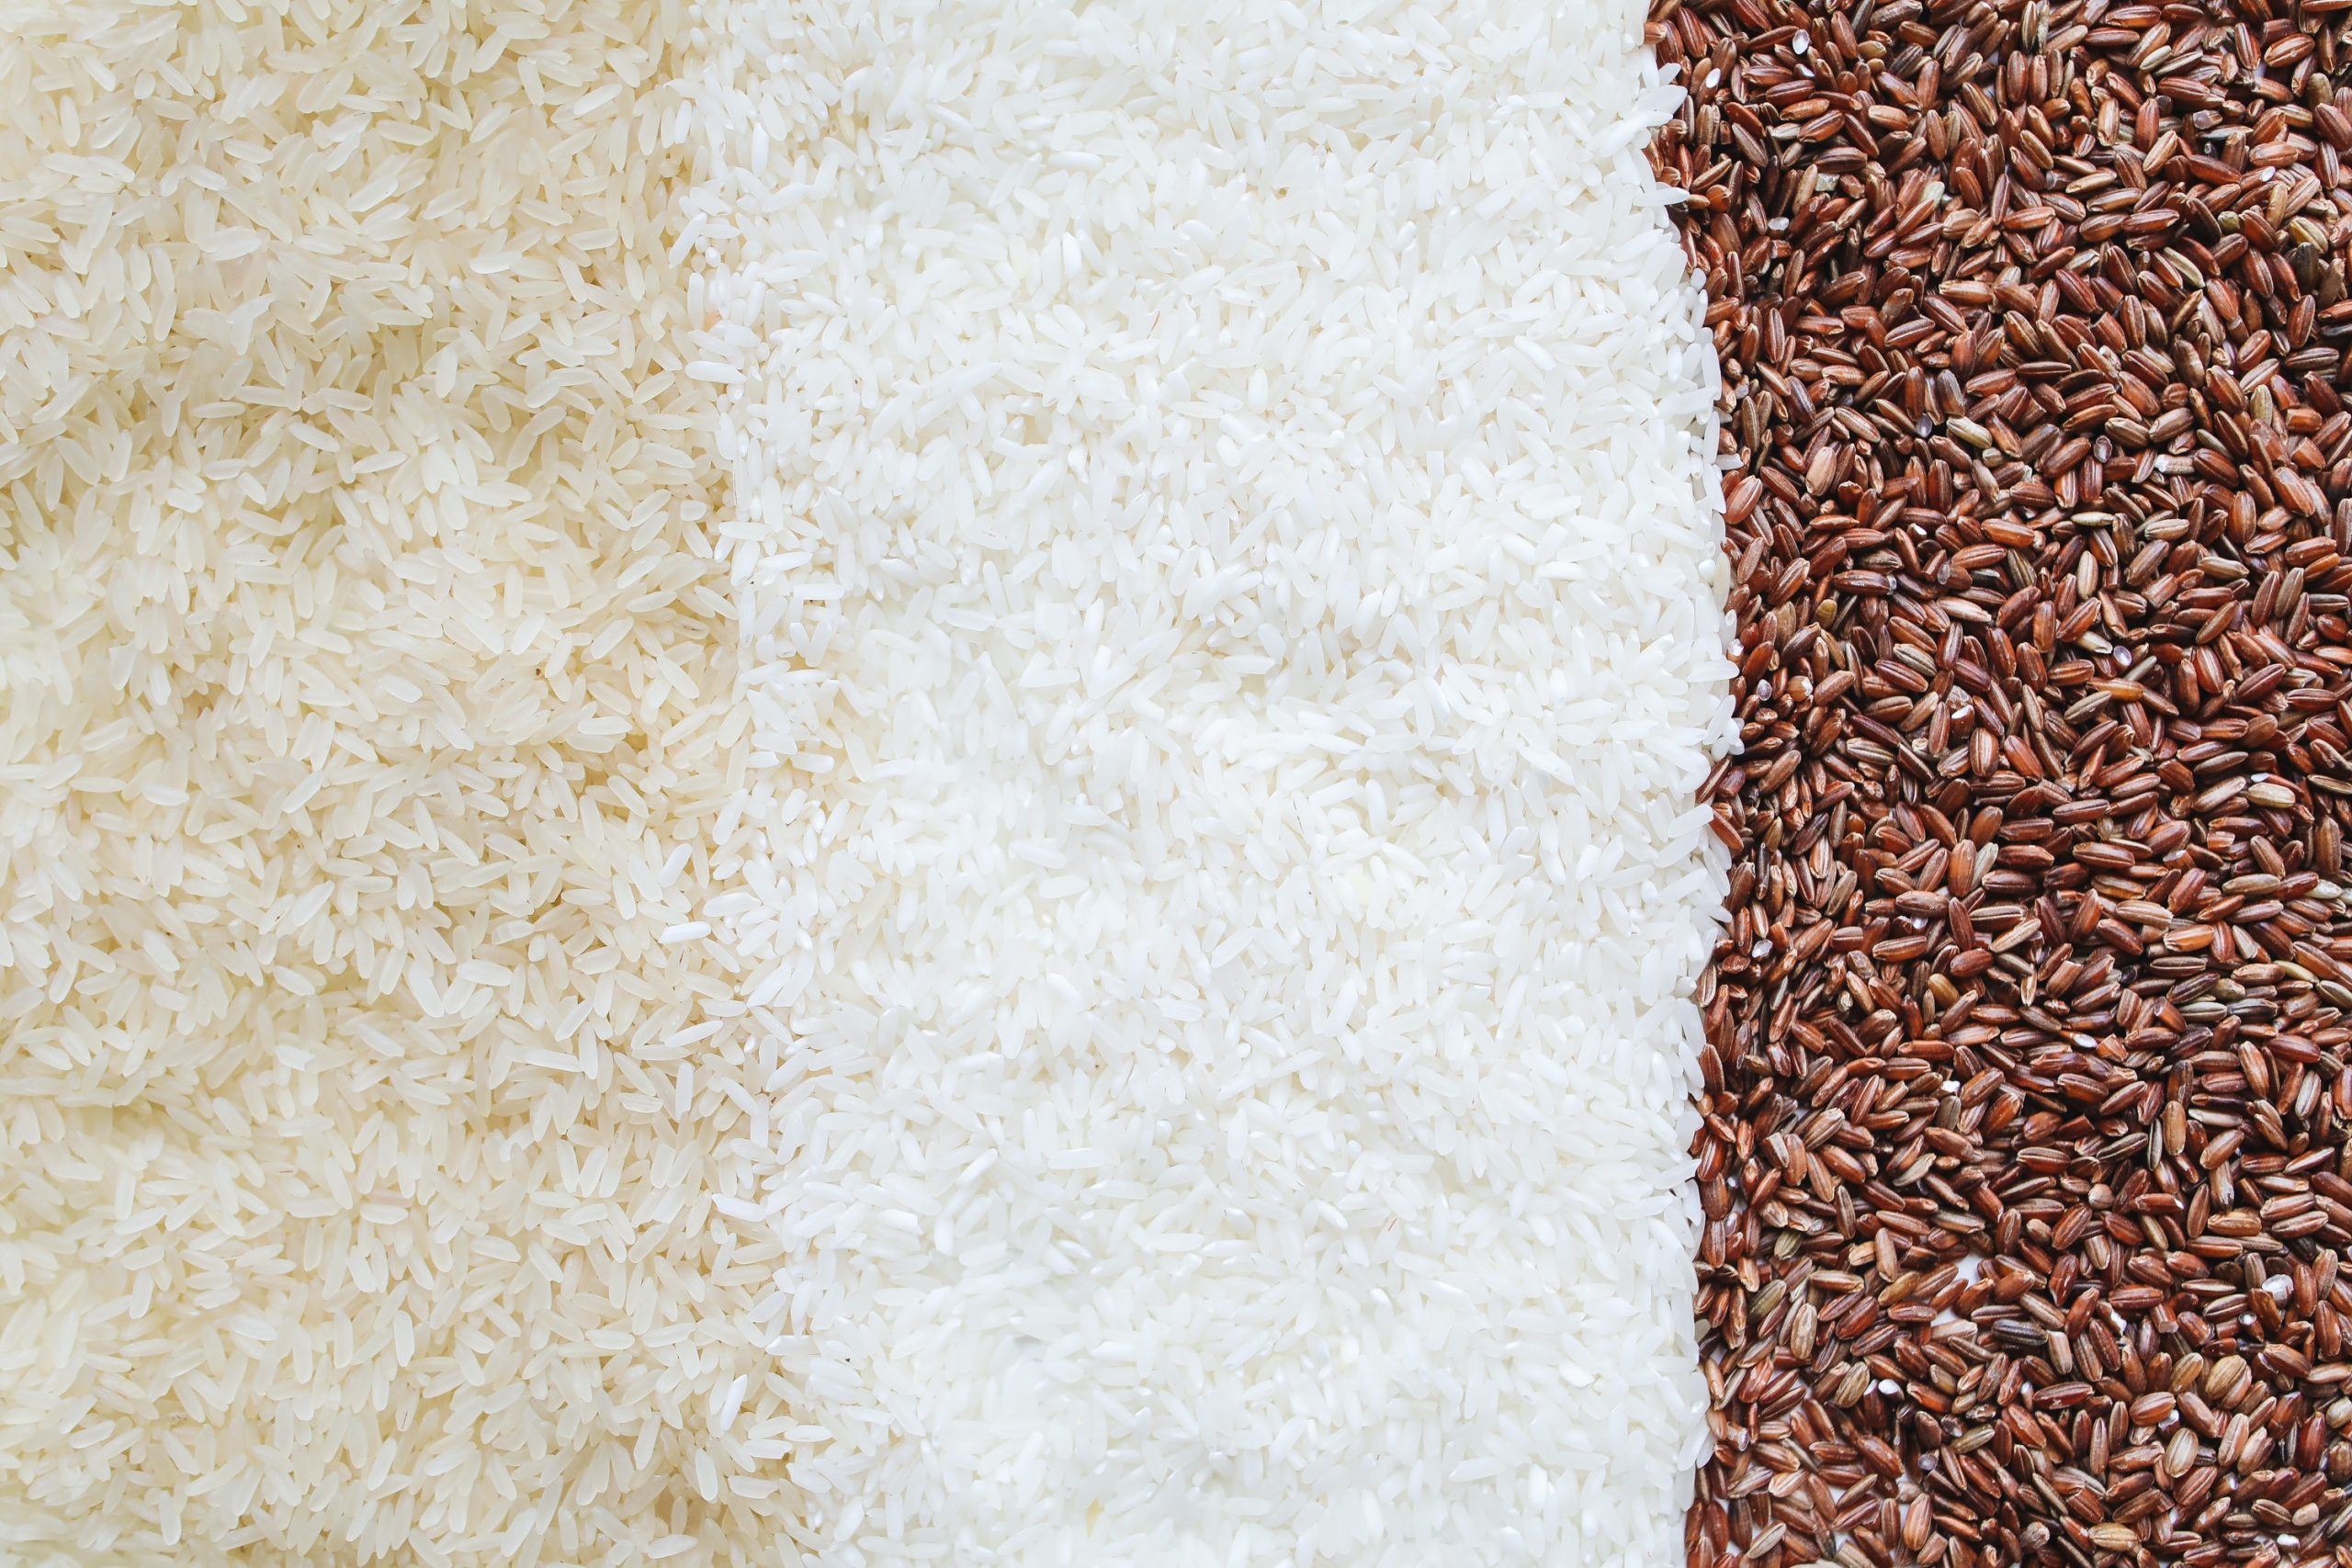 Instant Rice Vs Regular Rice